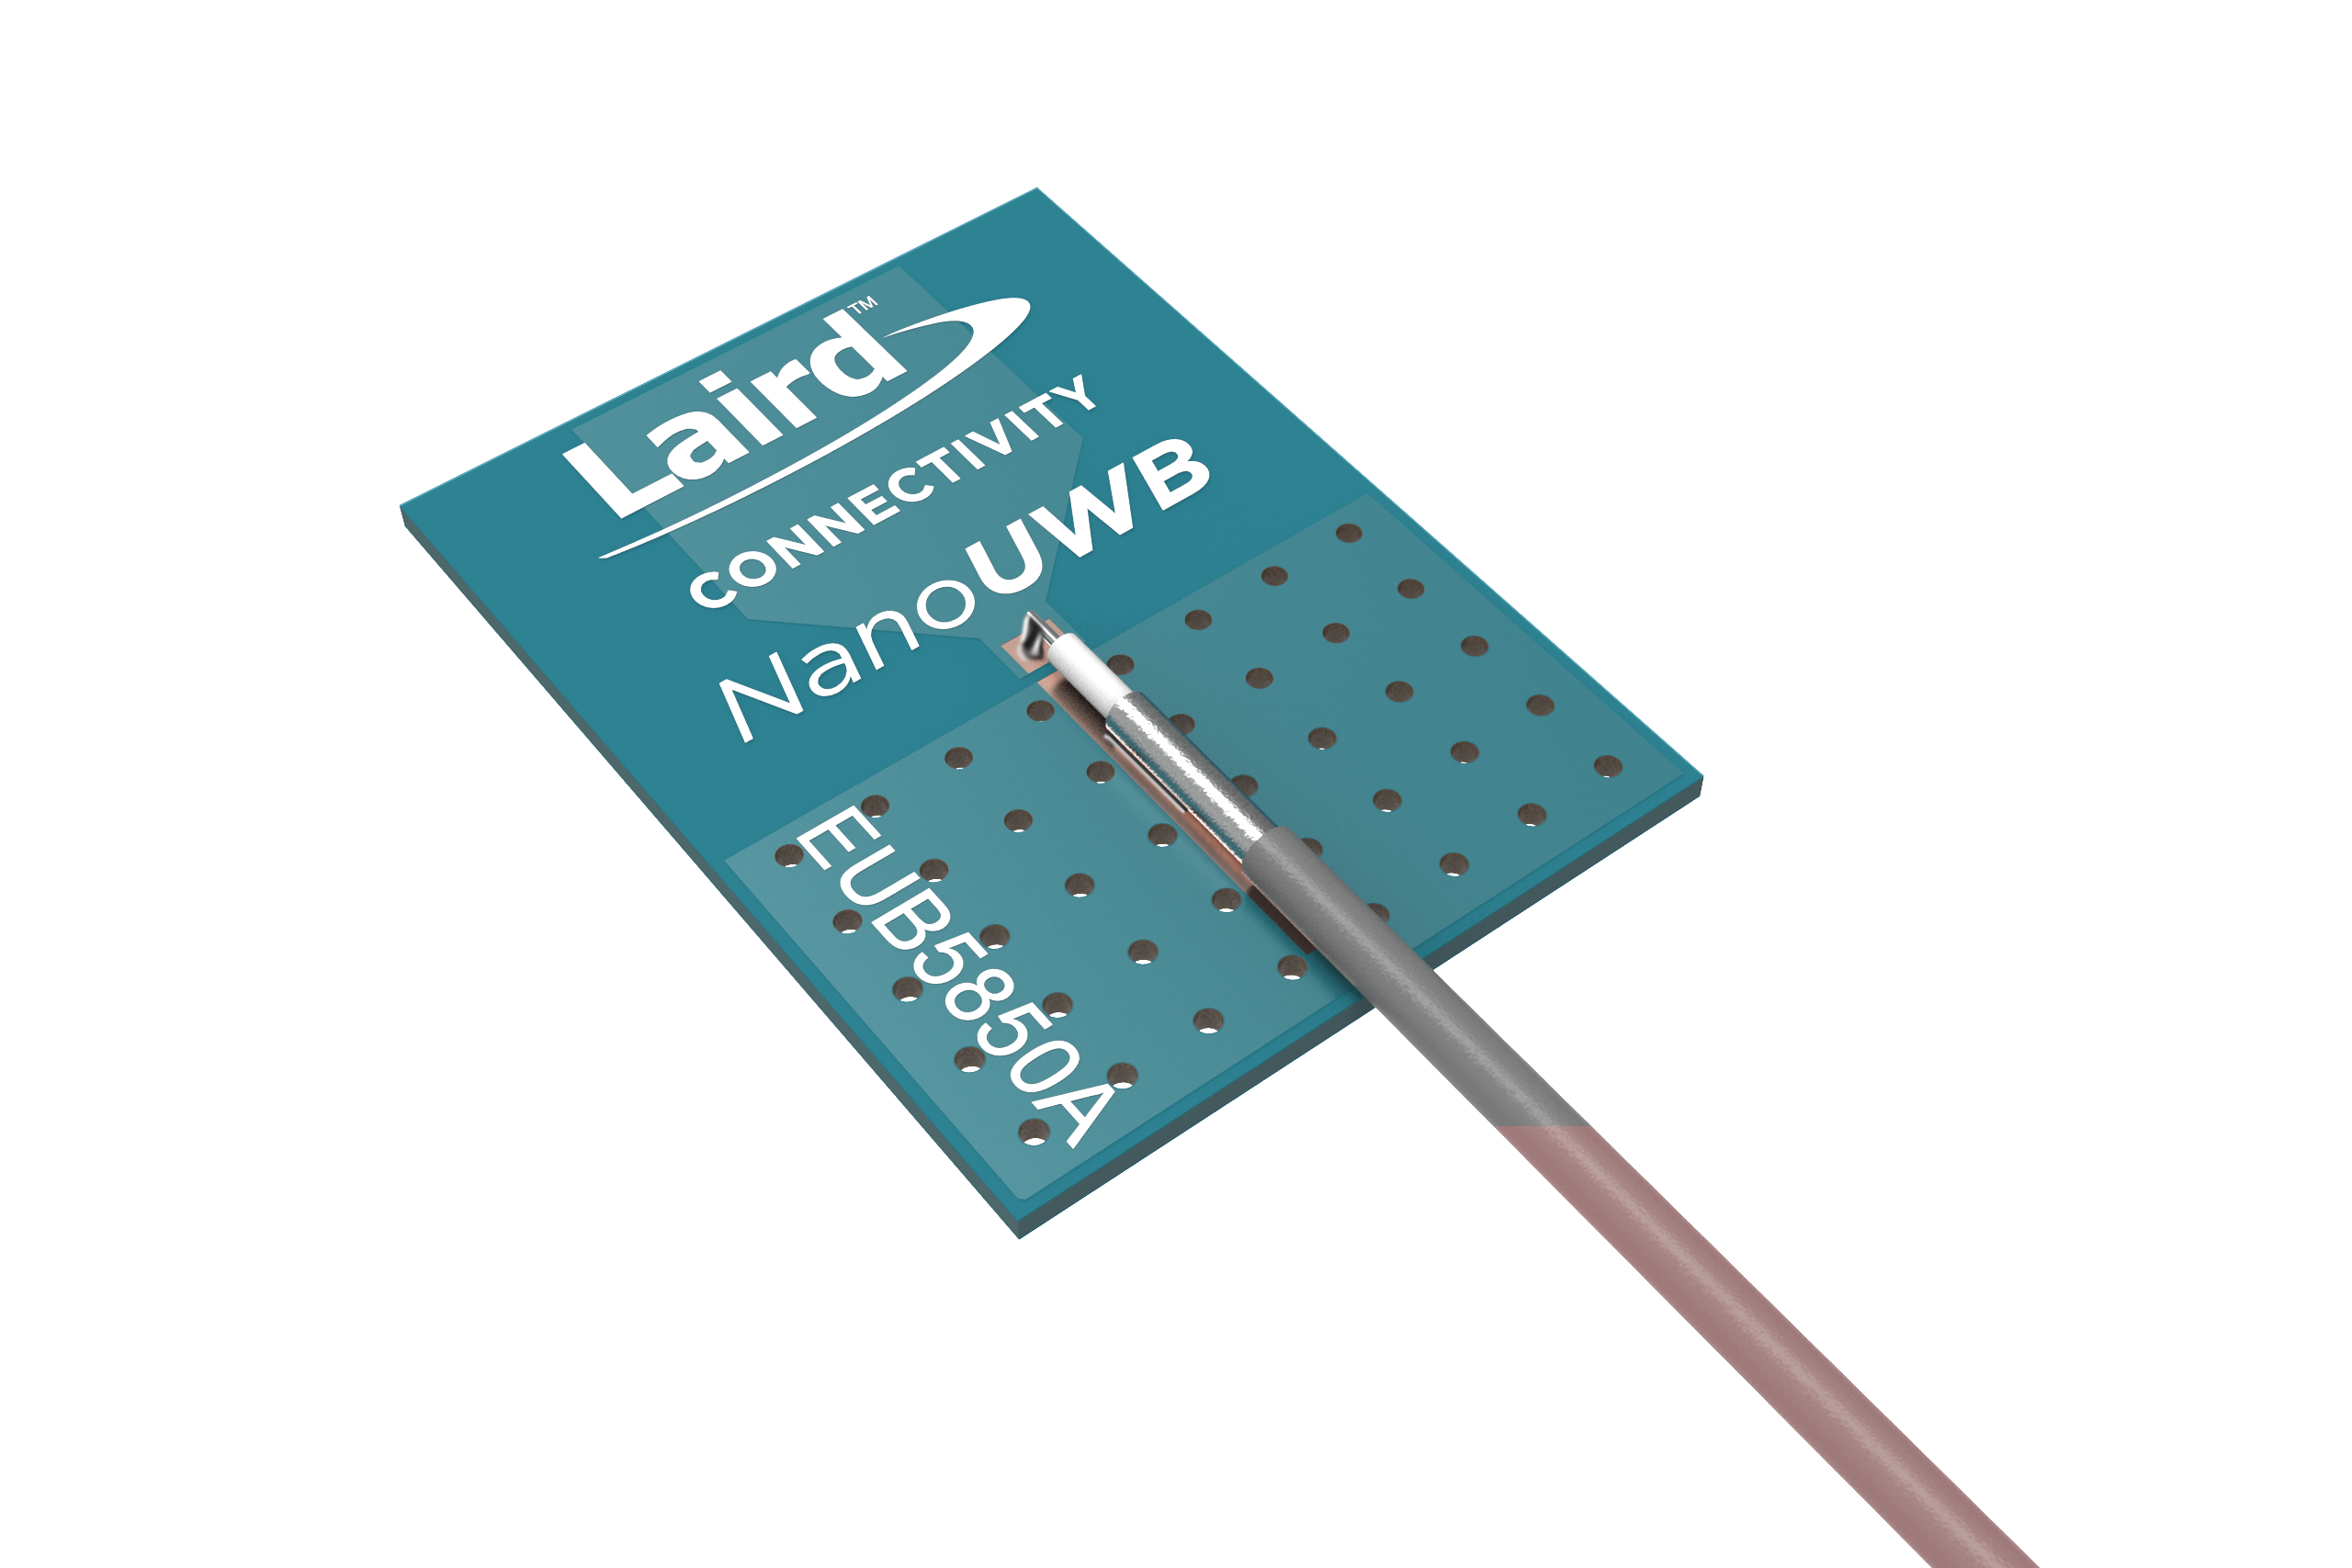 NanoUWB Series Internal Antennas